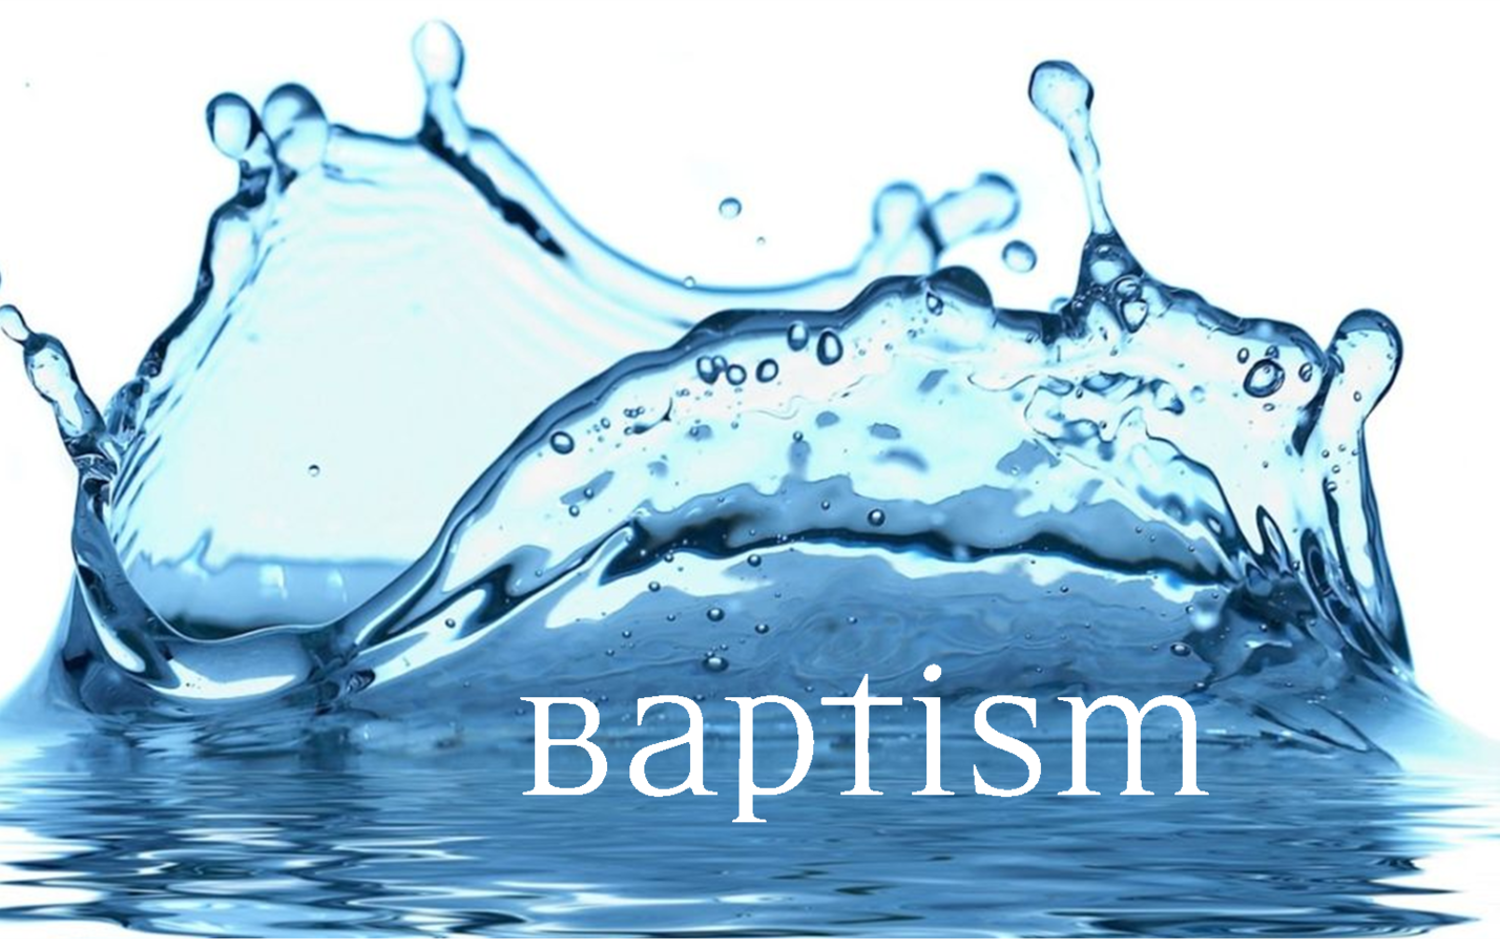 Sunday Worship & Baptism Service